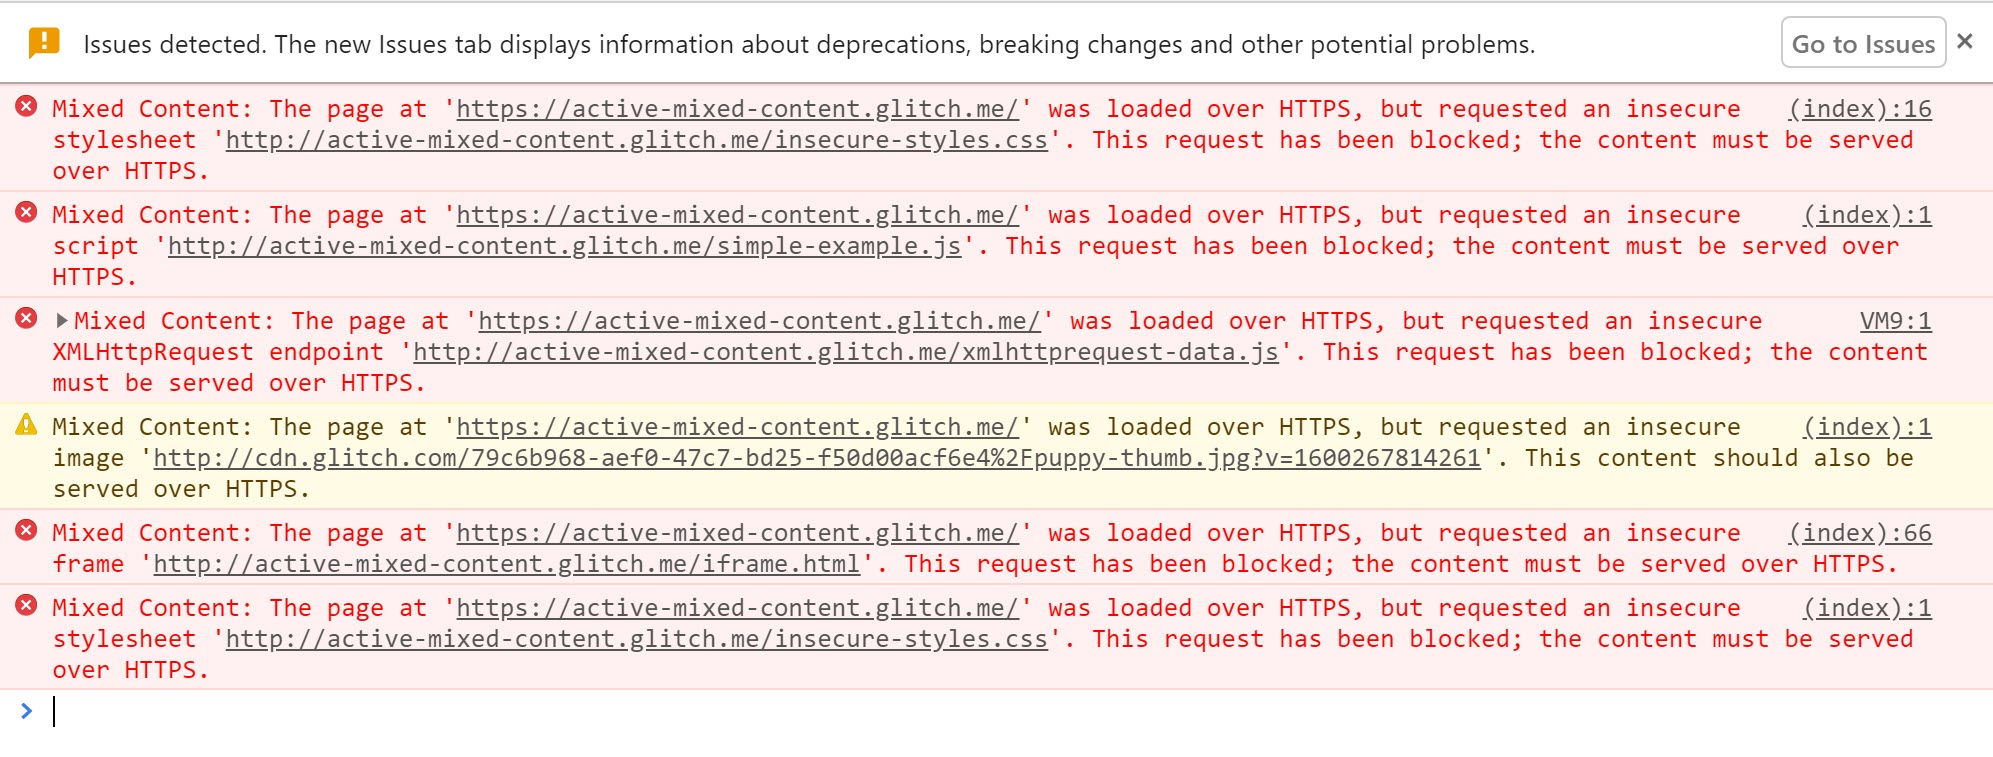 Chrome DevTools muestra las advertencias que aparecen cuando el contenido mixto activo está bloqueado